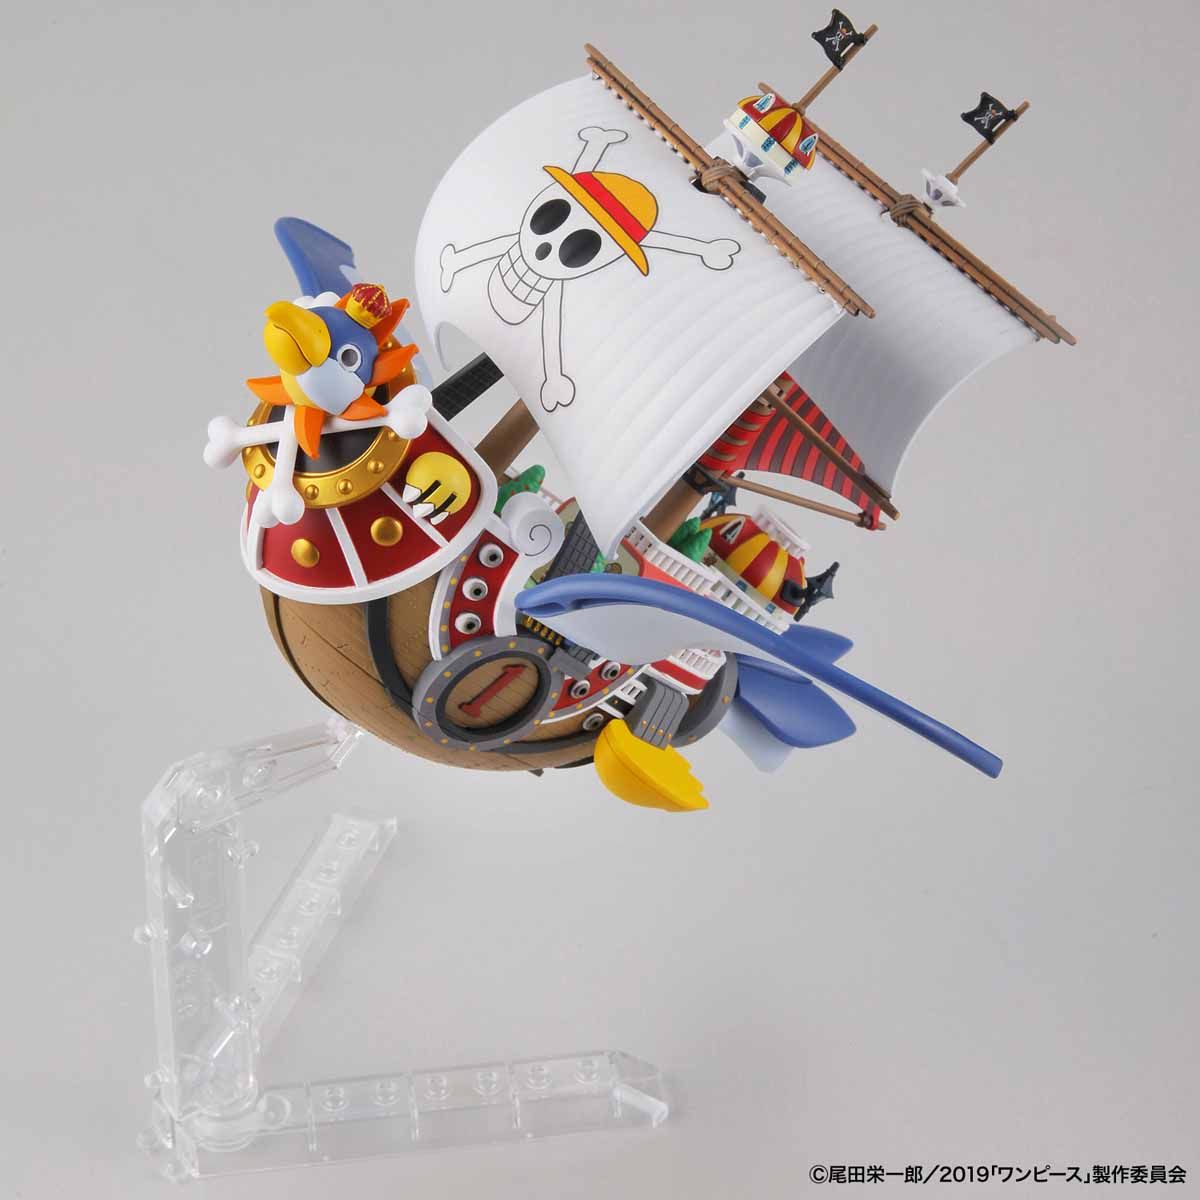 ワンピース偉大なる船(グランドシップ)コレクション サウザンド・サニー号 フライングモデル 02